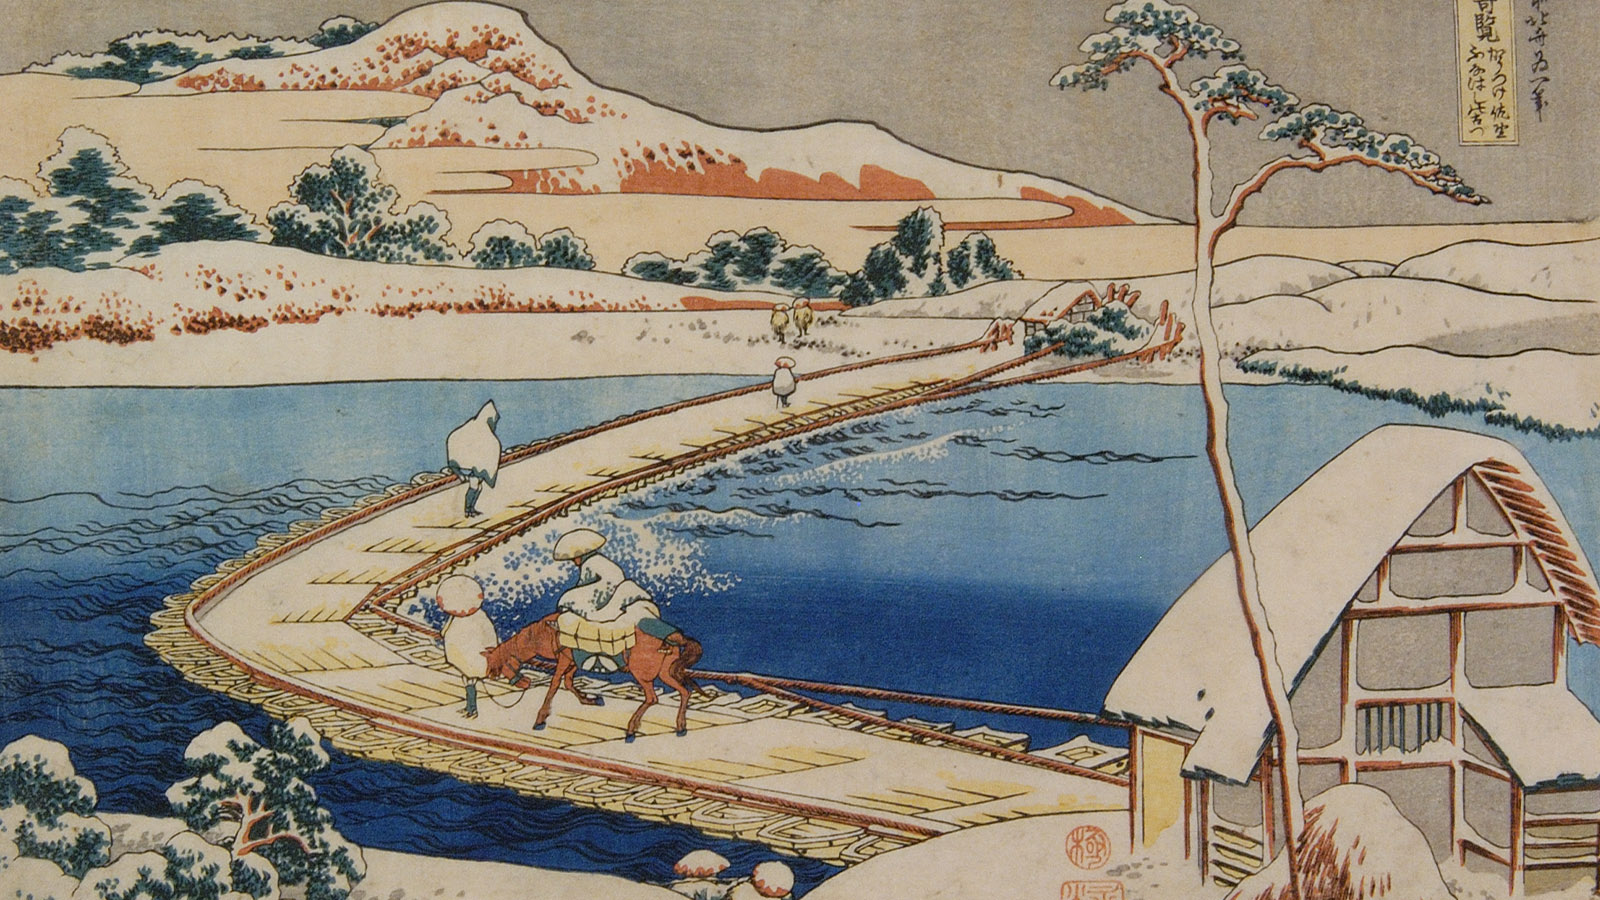 Katsushika Hokusai (1760-1849). 'Old Picture of Boat Bridge, Sano, Kōzuke, from the series Wondrous Views of Famous Bridges in Various Provinces [Shokoku meikyō kiran]'. Japan, 1834 Woodblock print on paper Publisher: Nishimuraya Yohachi (Eijudo) (c. 1751–1860)